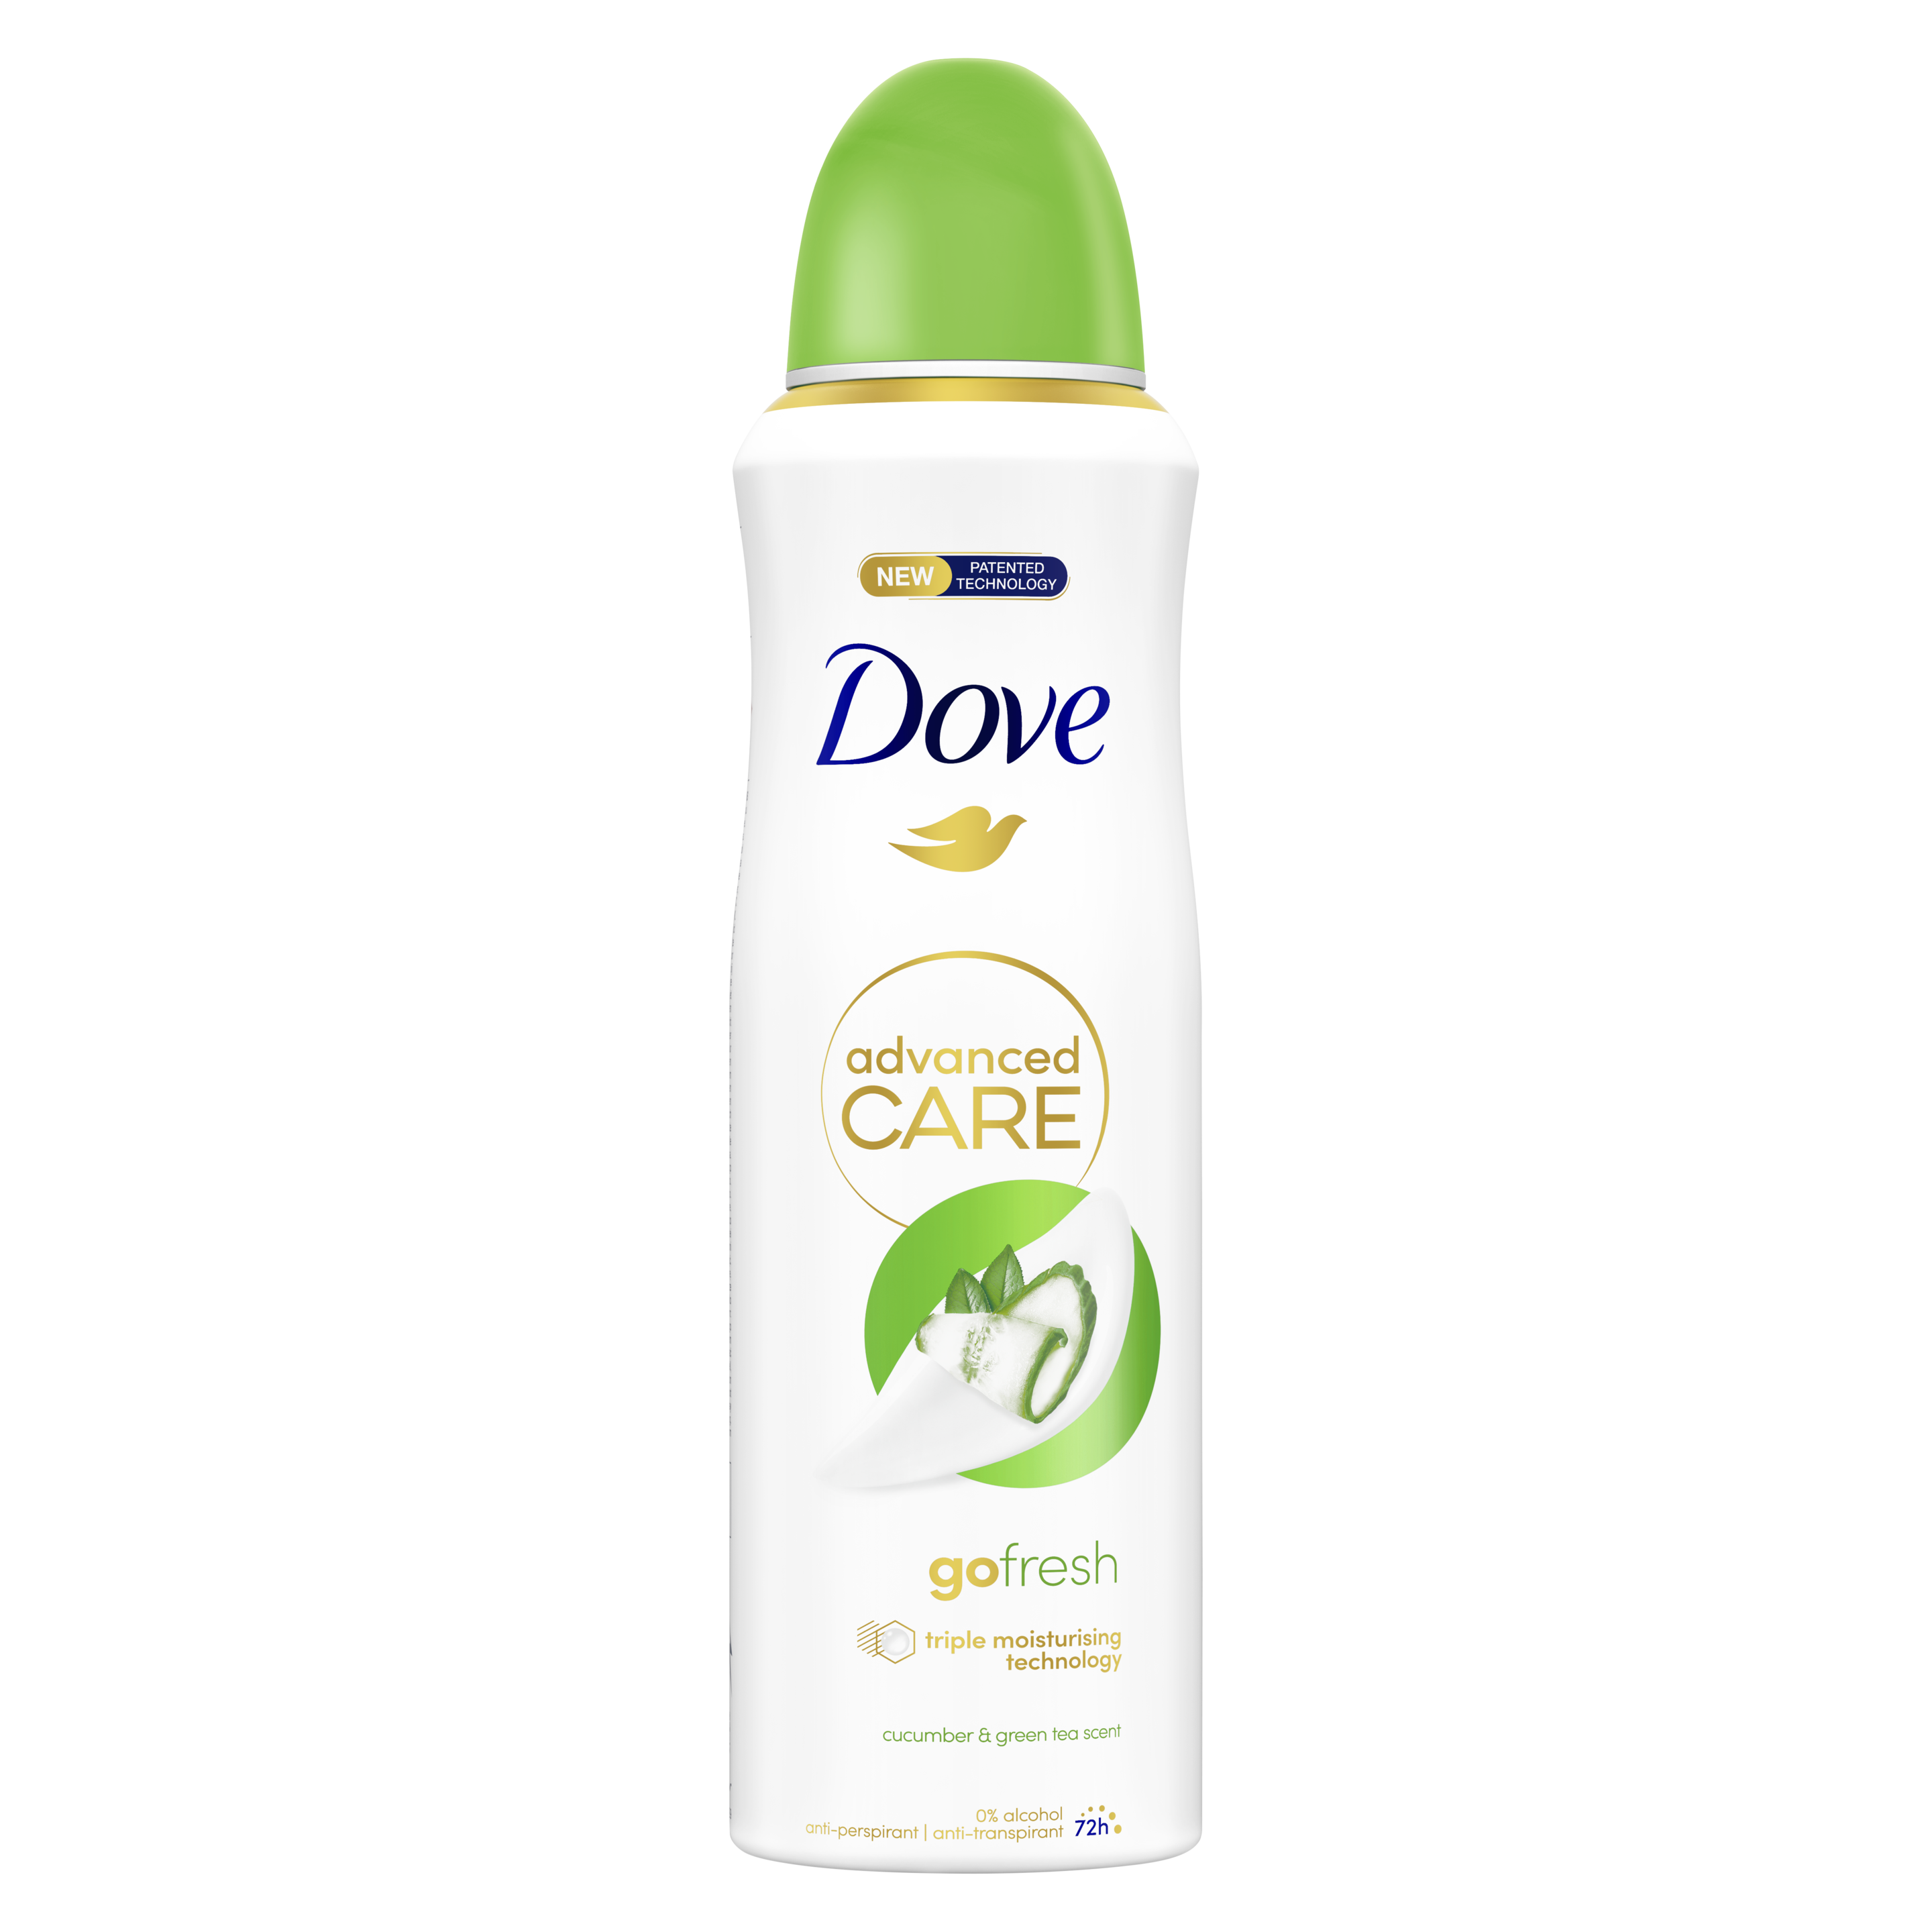 Go Fresh Cucumber & Green Tea Deodorant Spray – Dove